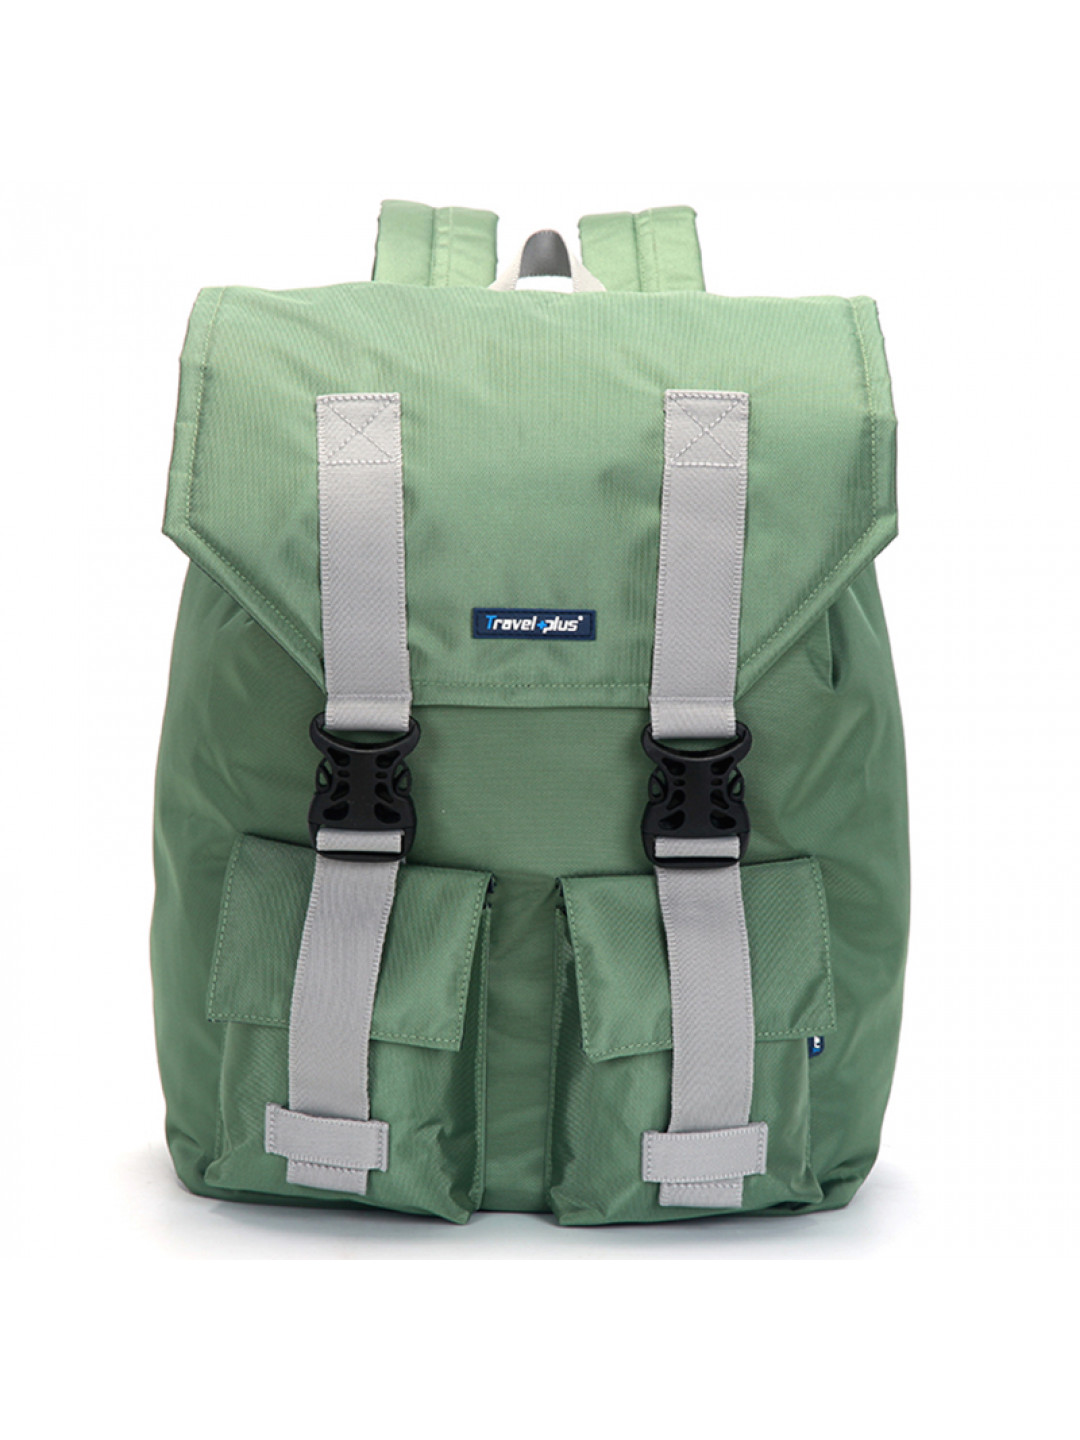 Velký prodyšný multifunkční batoh Travel plus zelený